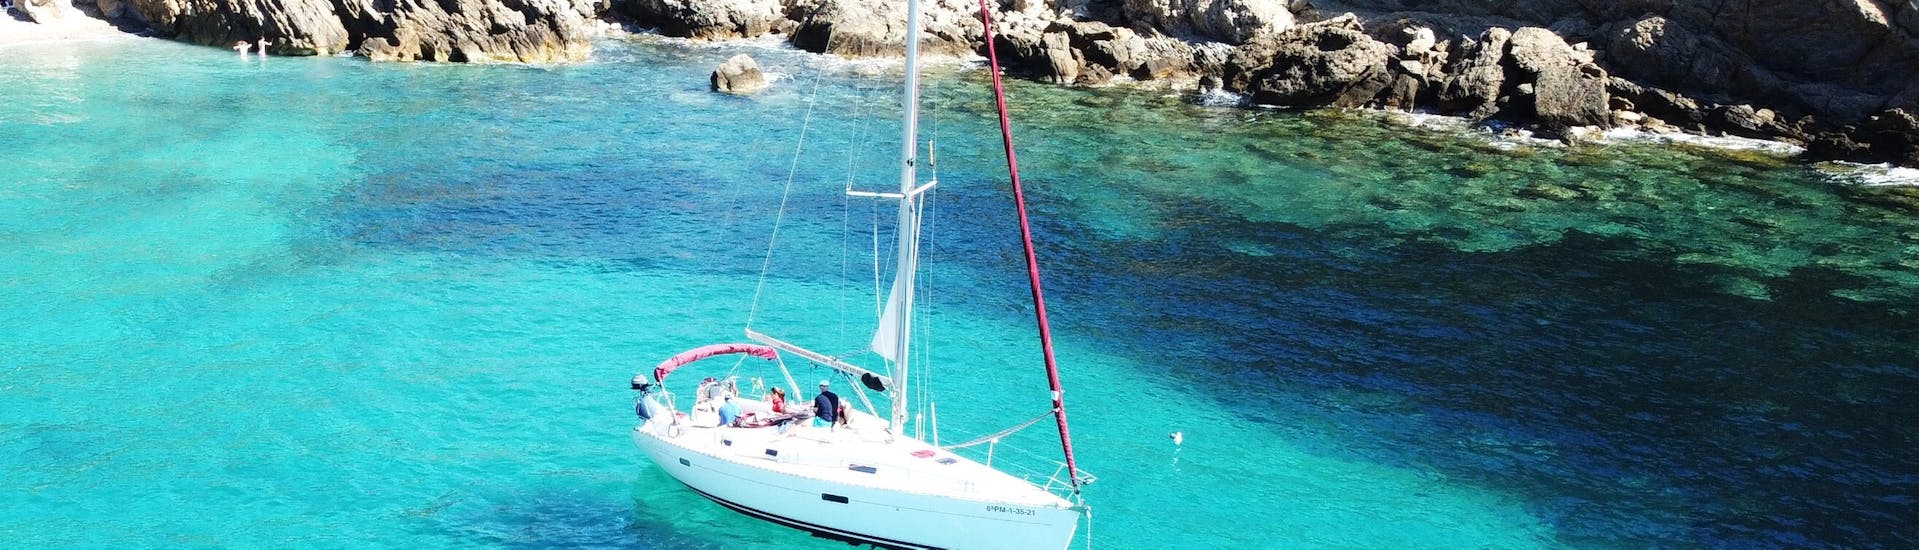 La nostra barca naviga sull'acqua durante la gita privata in barca di un giorno intero a Maiorca da Port d'Andratx con Pura Vida Sailing Mallorca.